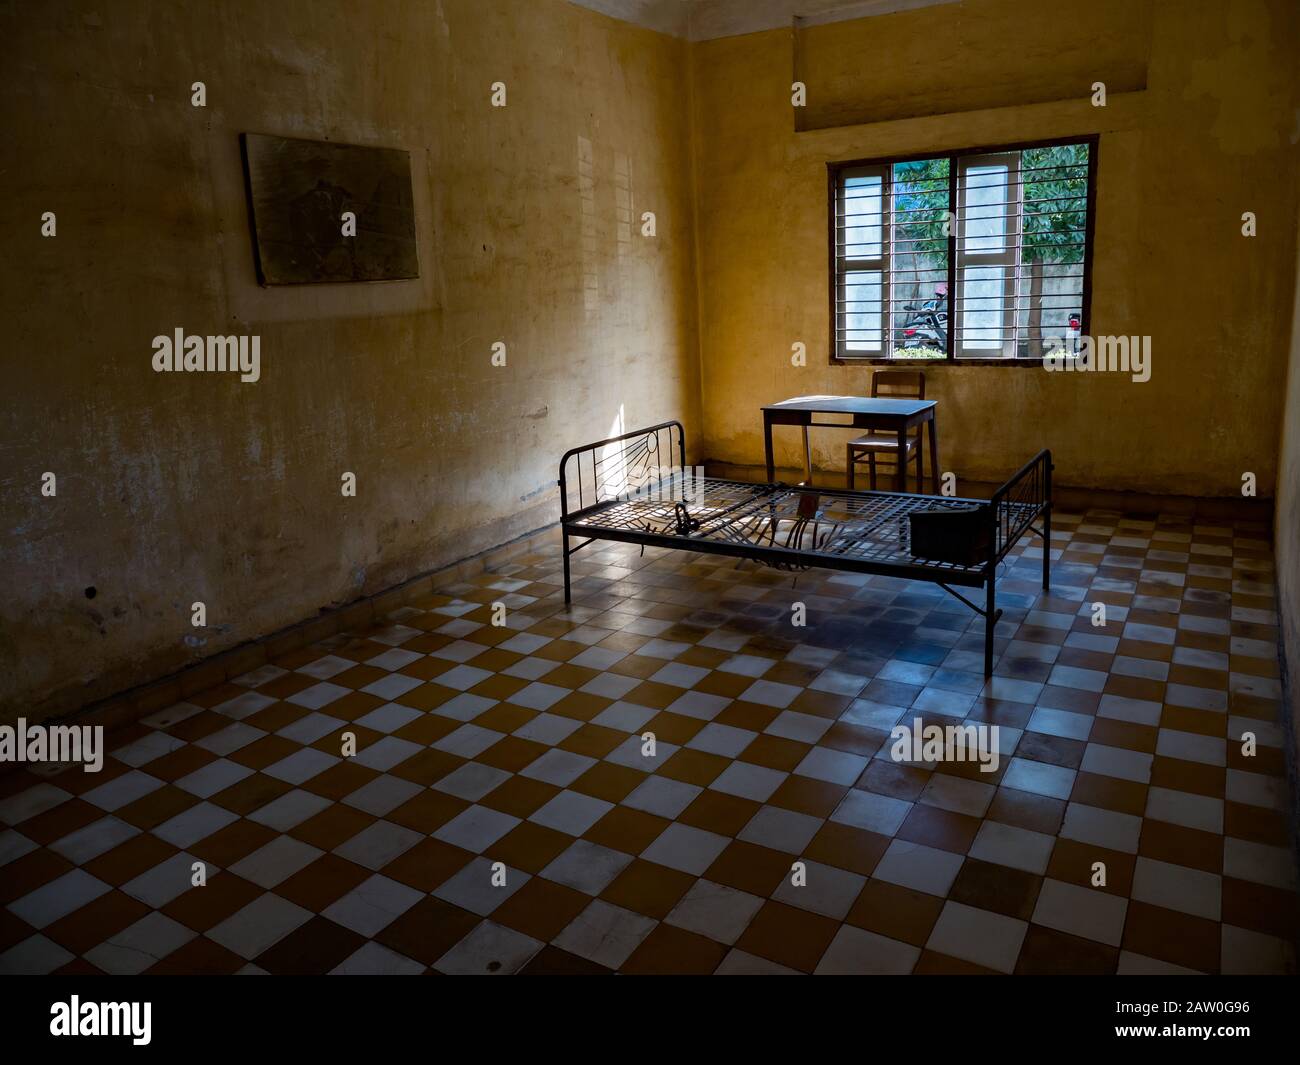 Das Folterkammergefängnis S21 von der Khmer Rouge in Phnom Penh Kambodscha Stockfoto